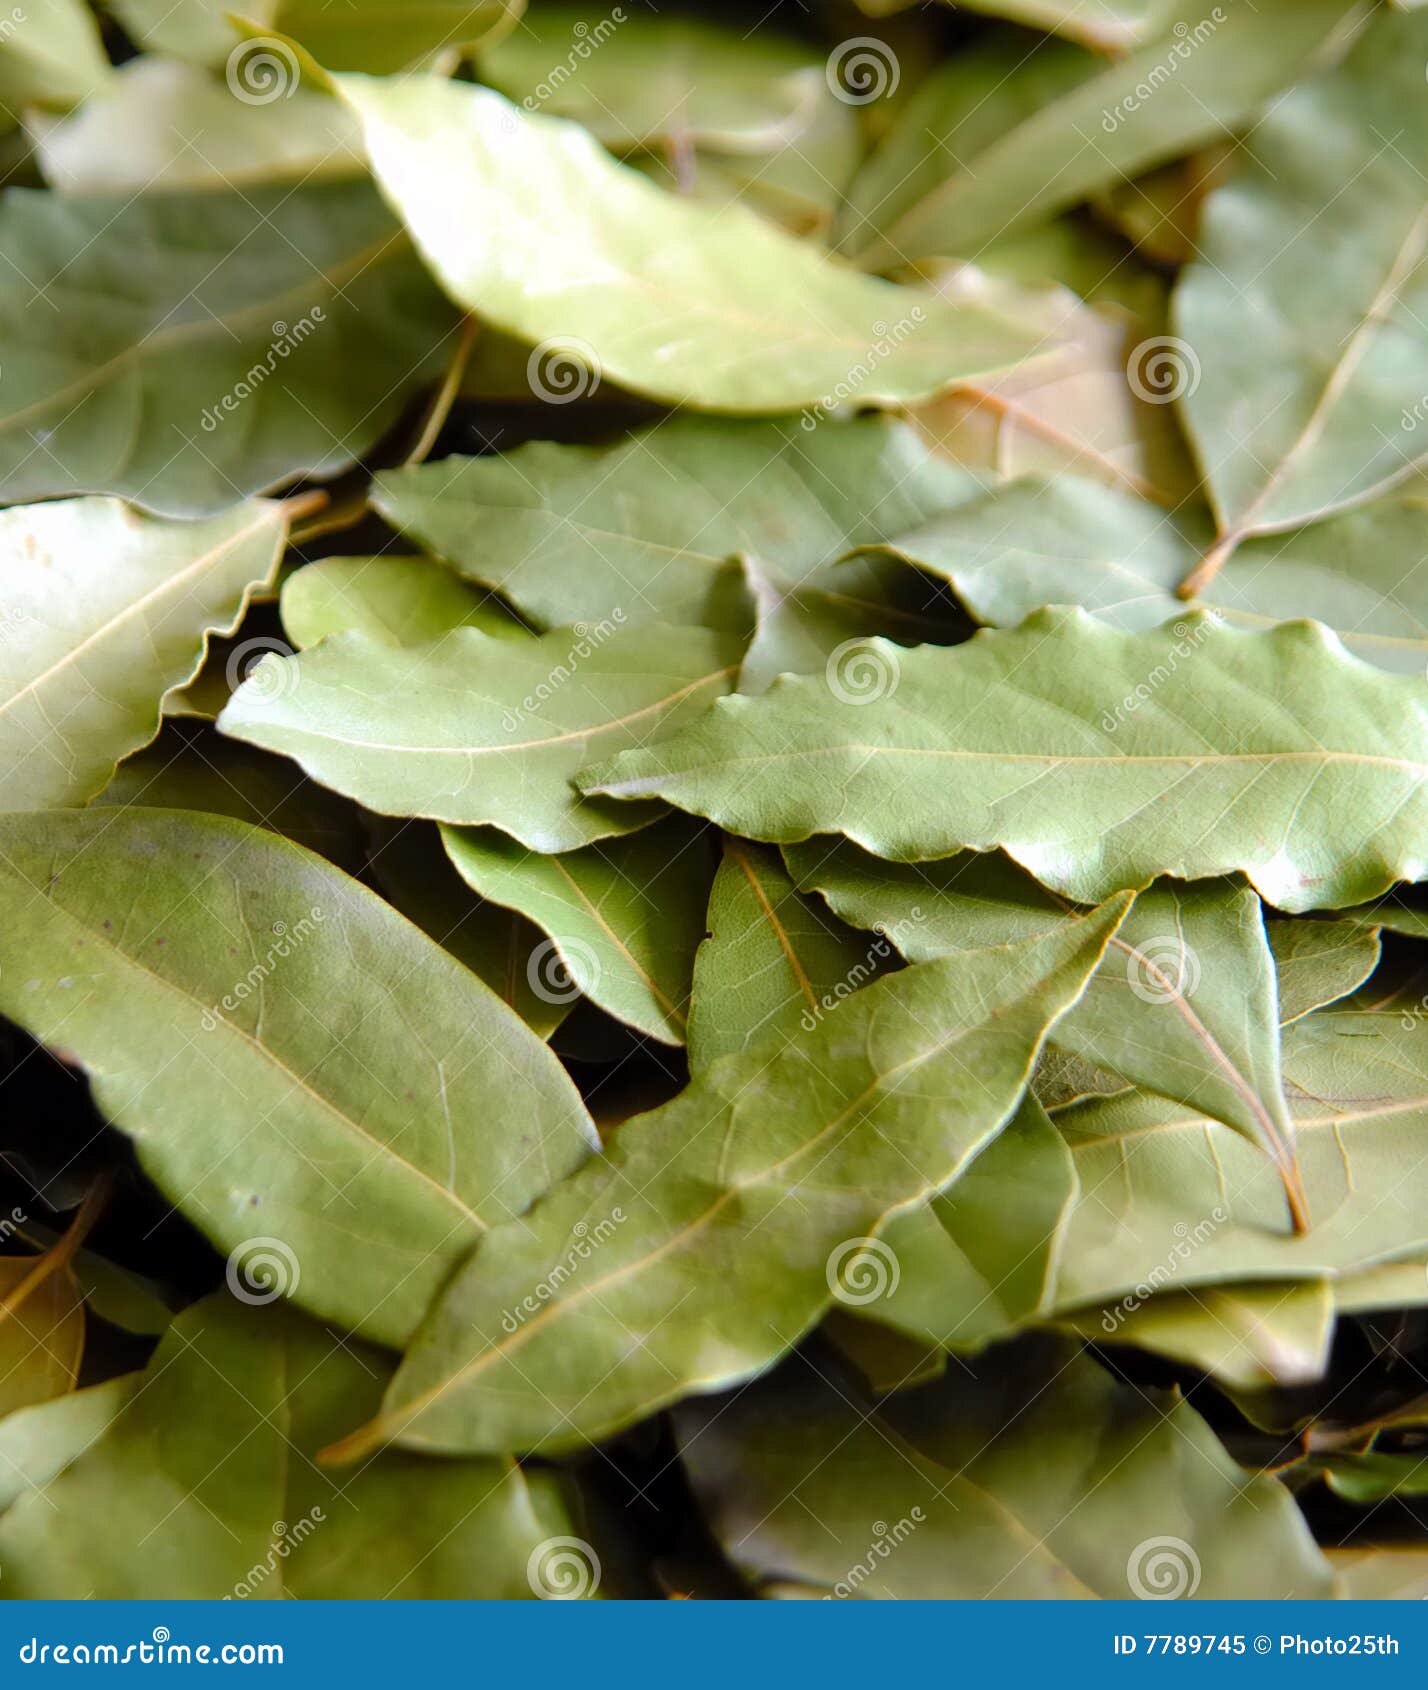 daphne leafs